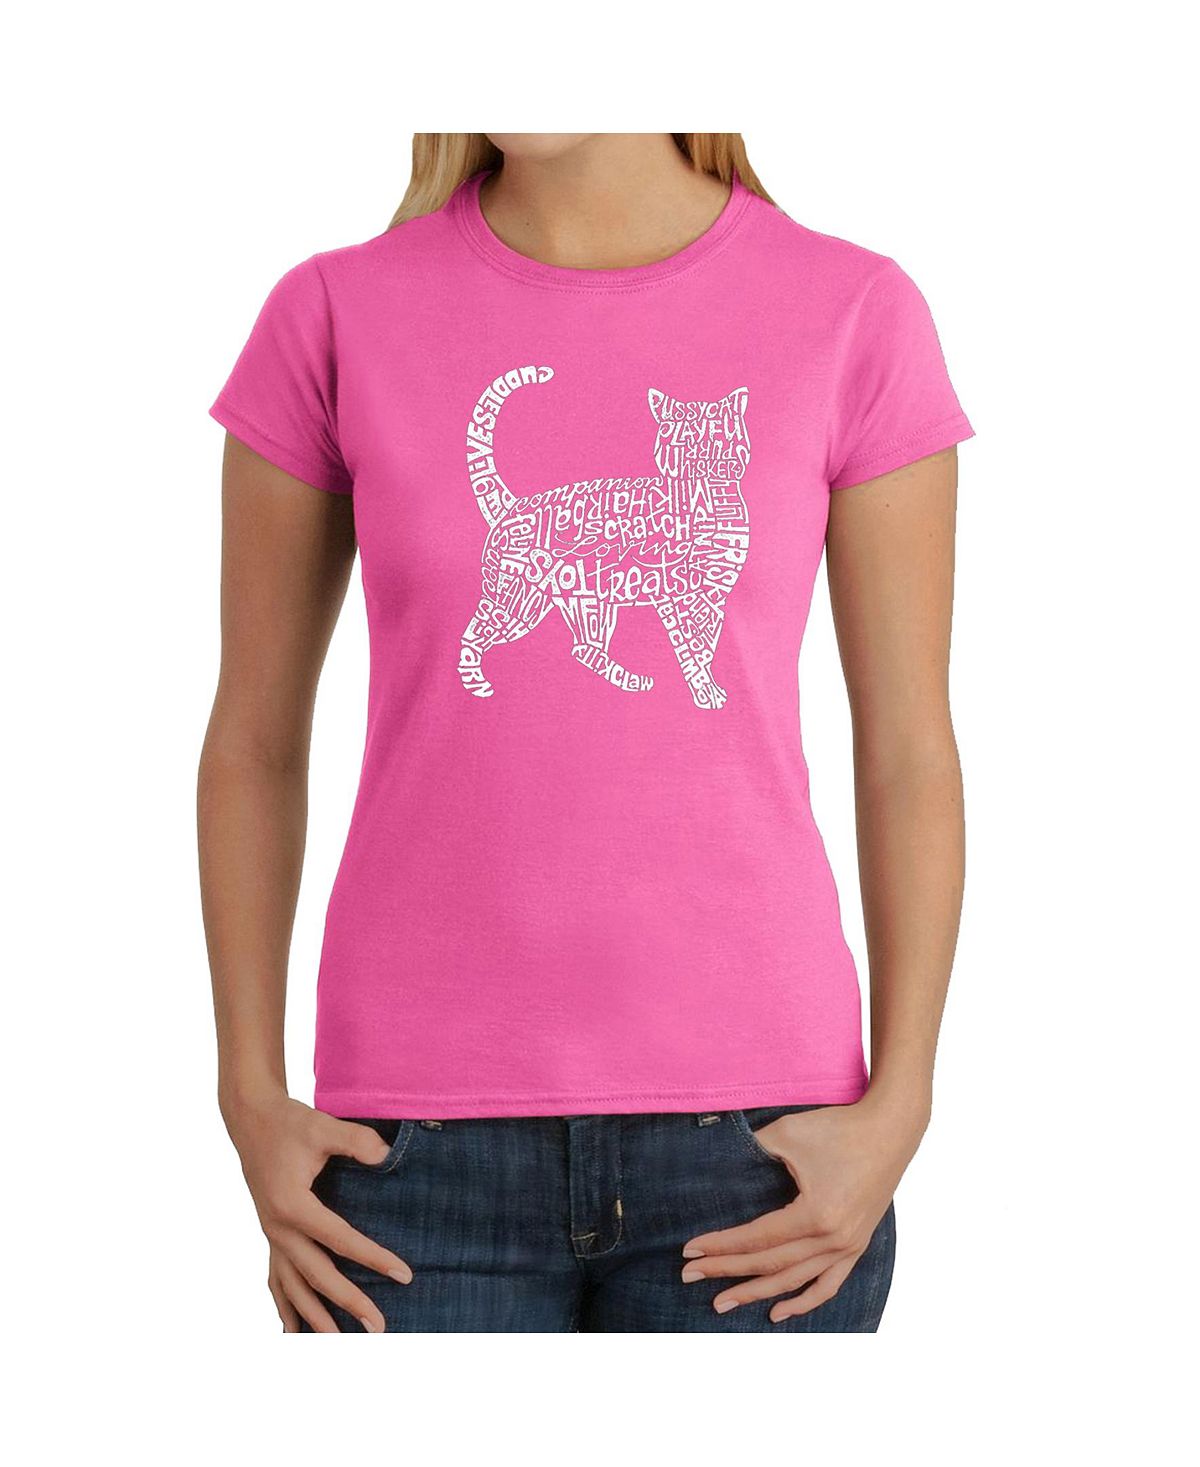 Женская футболка word art - кошка LA Pop Art, розовый женская футболка word art disco ball la pop art розовый